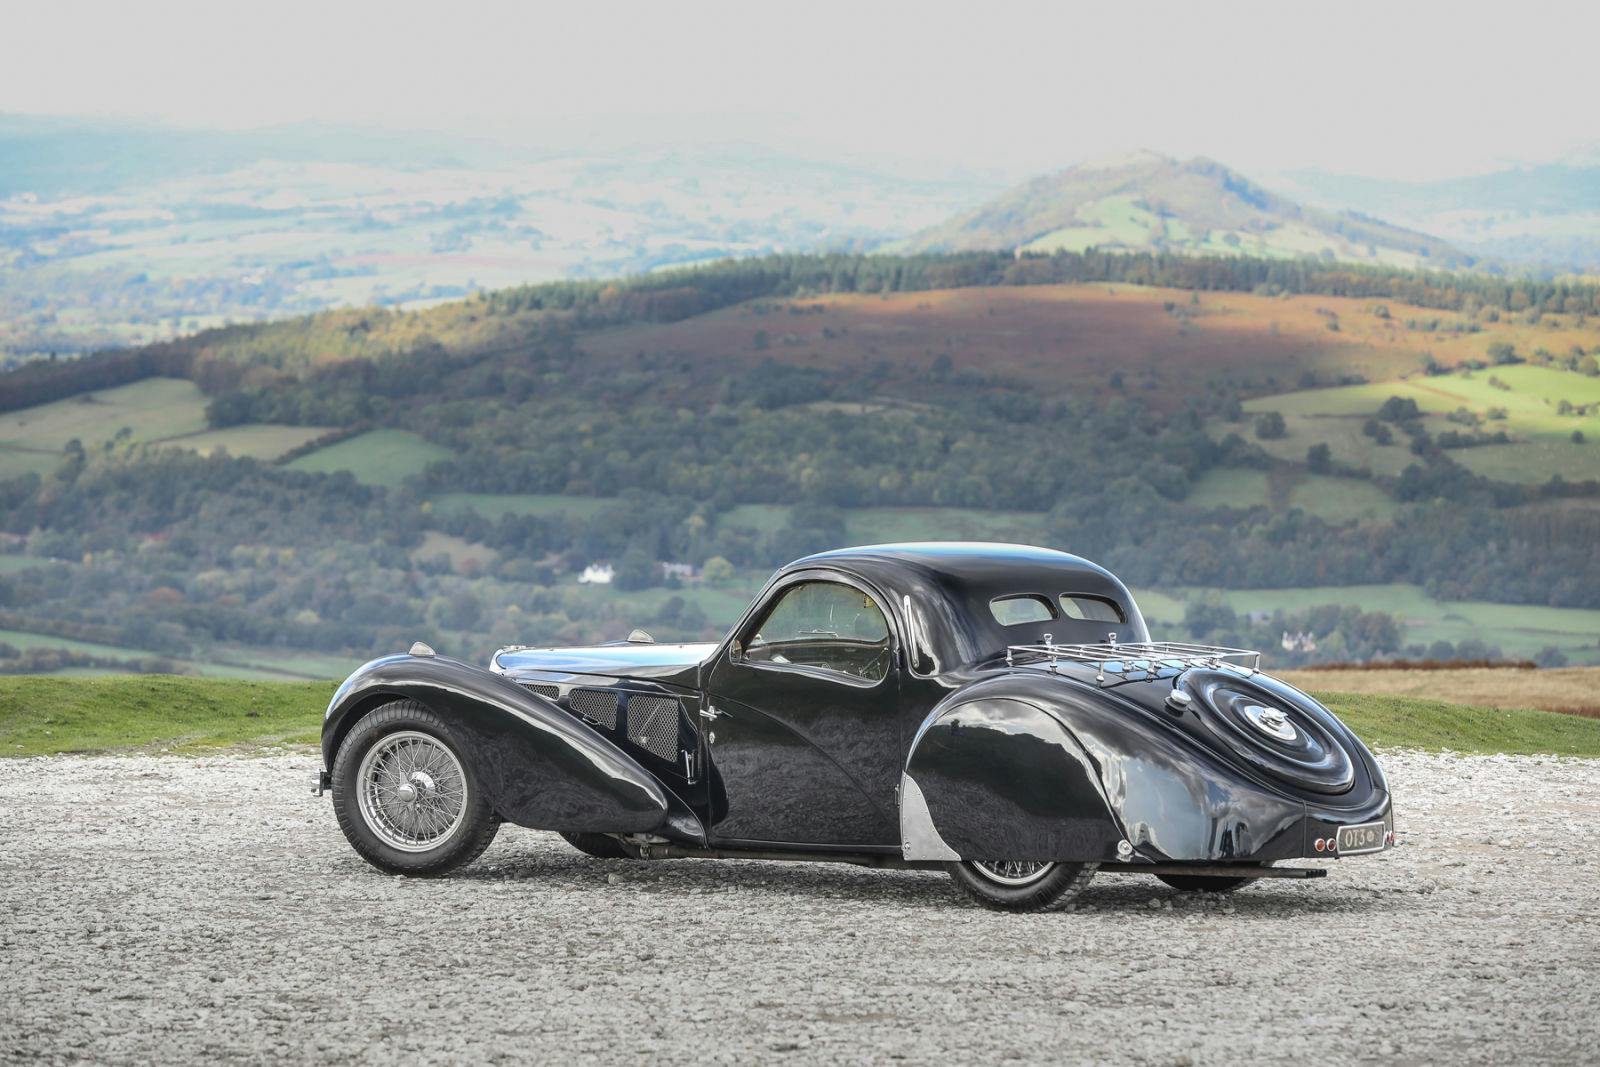 La Bugatti Type 57S Atalante de 1937 a été  vendue aux enchères pour 10,44 millions de dollars.